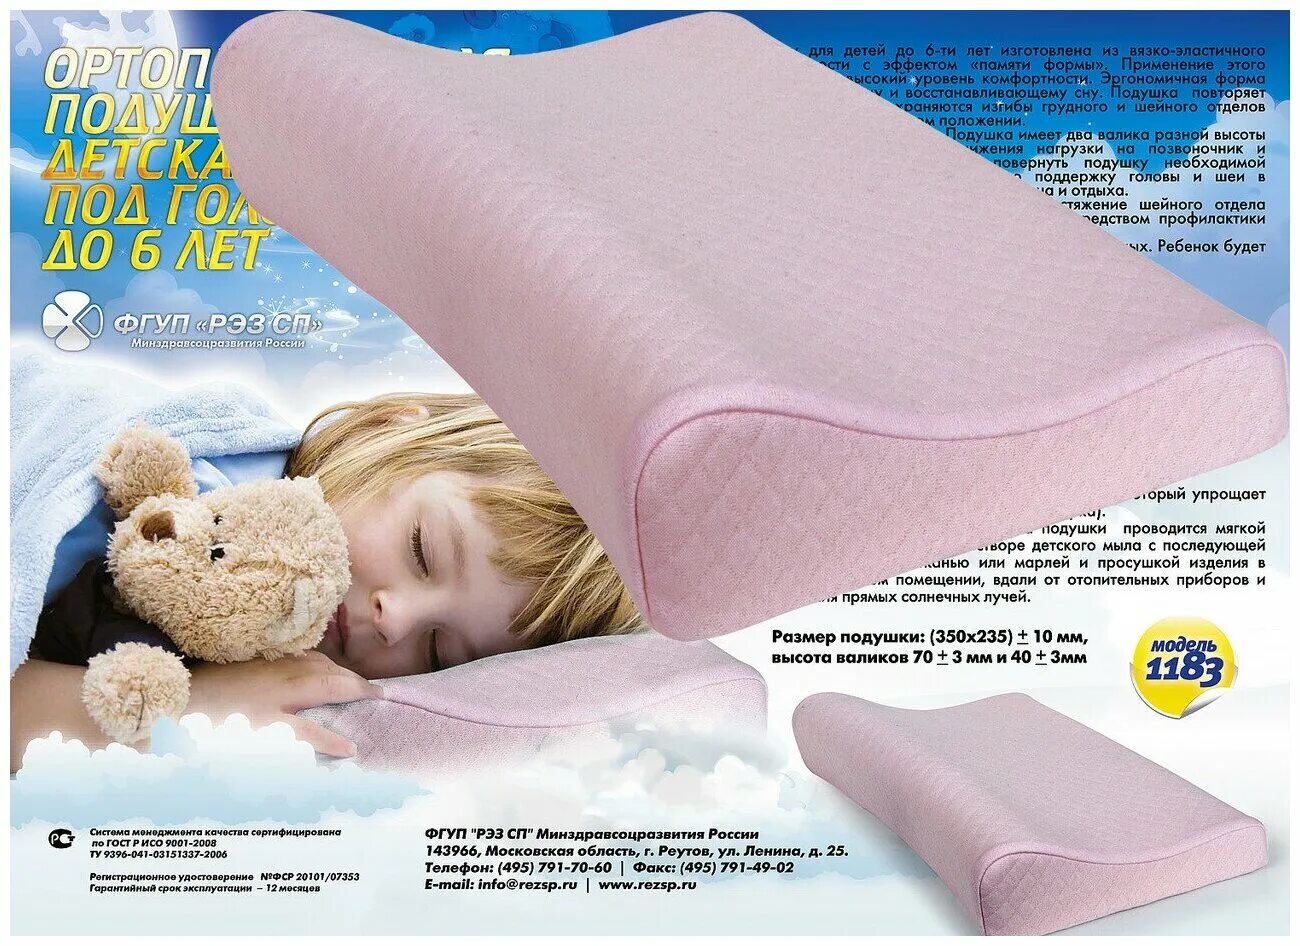 Как подобрать высоту подушки. Подушка детская. Подушка ортопедическая детская. Подушка для сна ребенку. Ортопедическая подушка для детей от 5 лет.